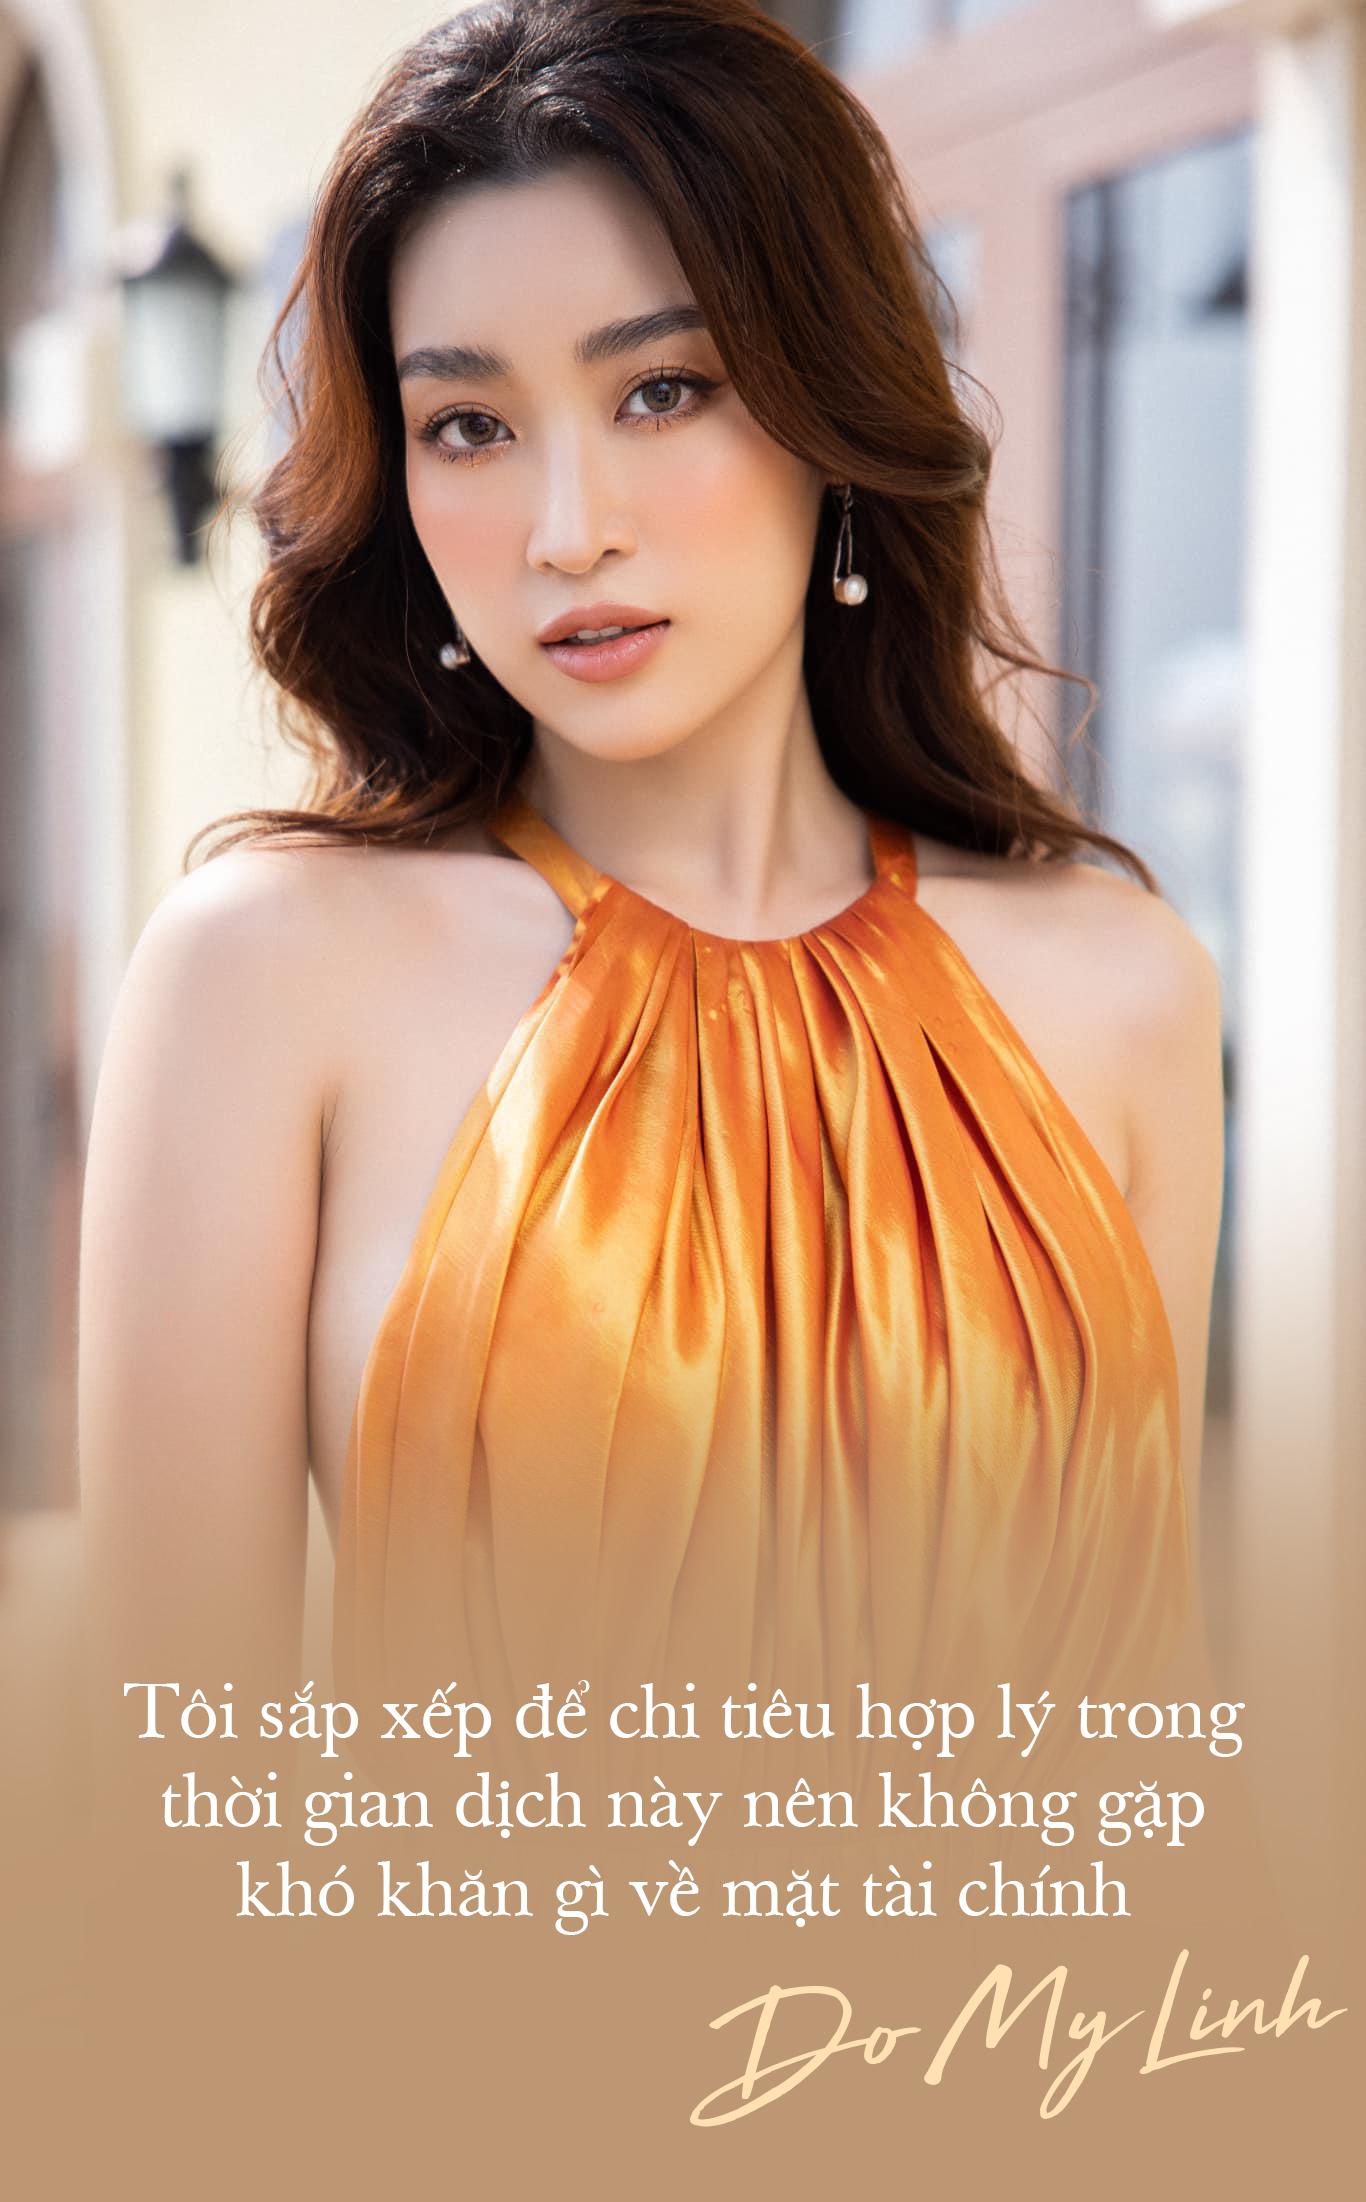 Hoa hậu Đỗ Mỹ Linh: Tôi thấy mình cứ sai sai khi theo đuổi phong cách sexy